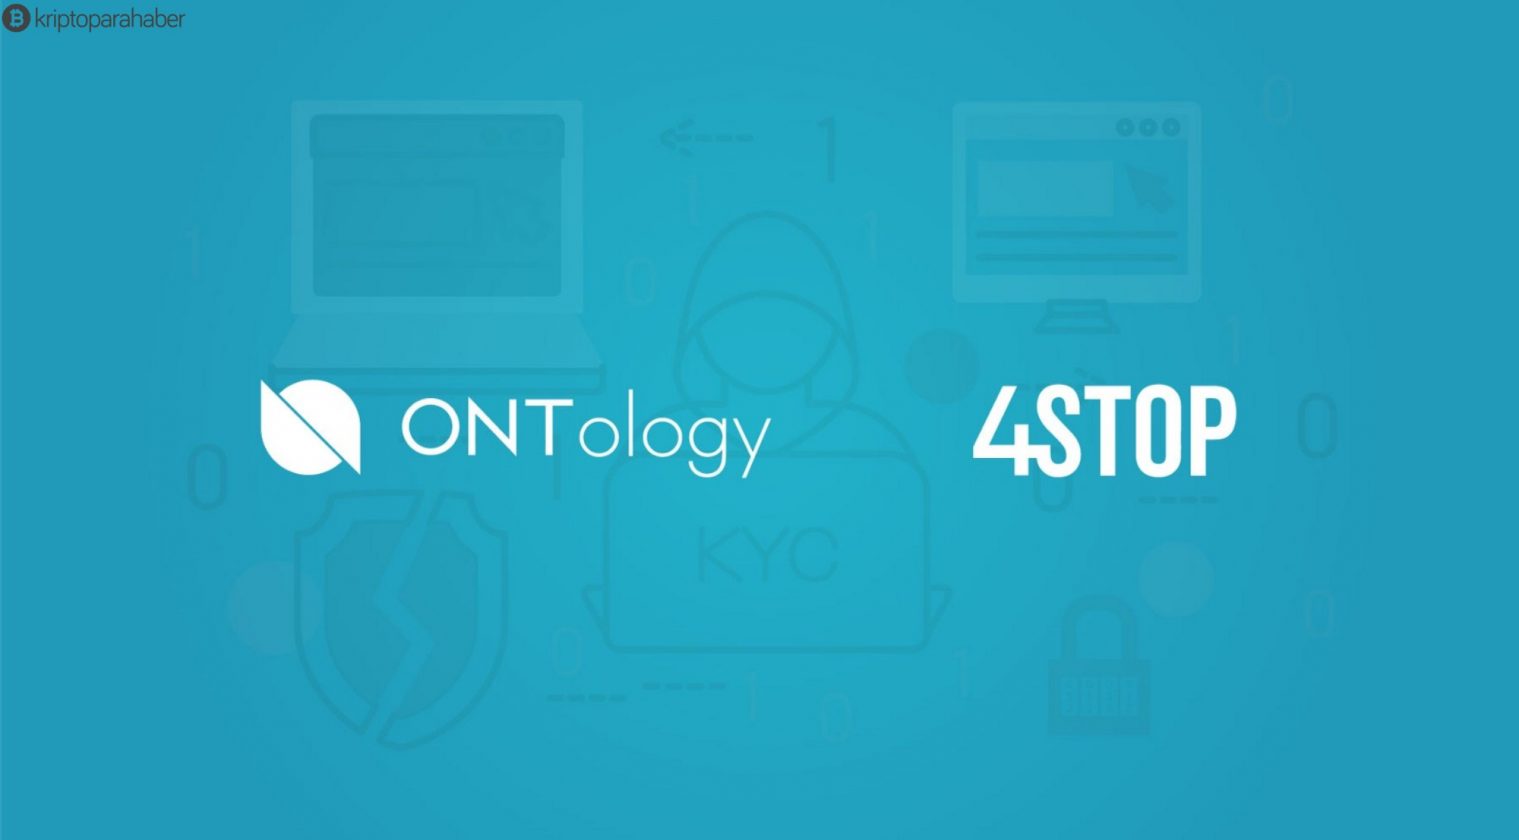 4Stop ve Ontology ortaklığa gidiyor - Kripto Para Haber